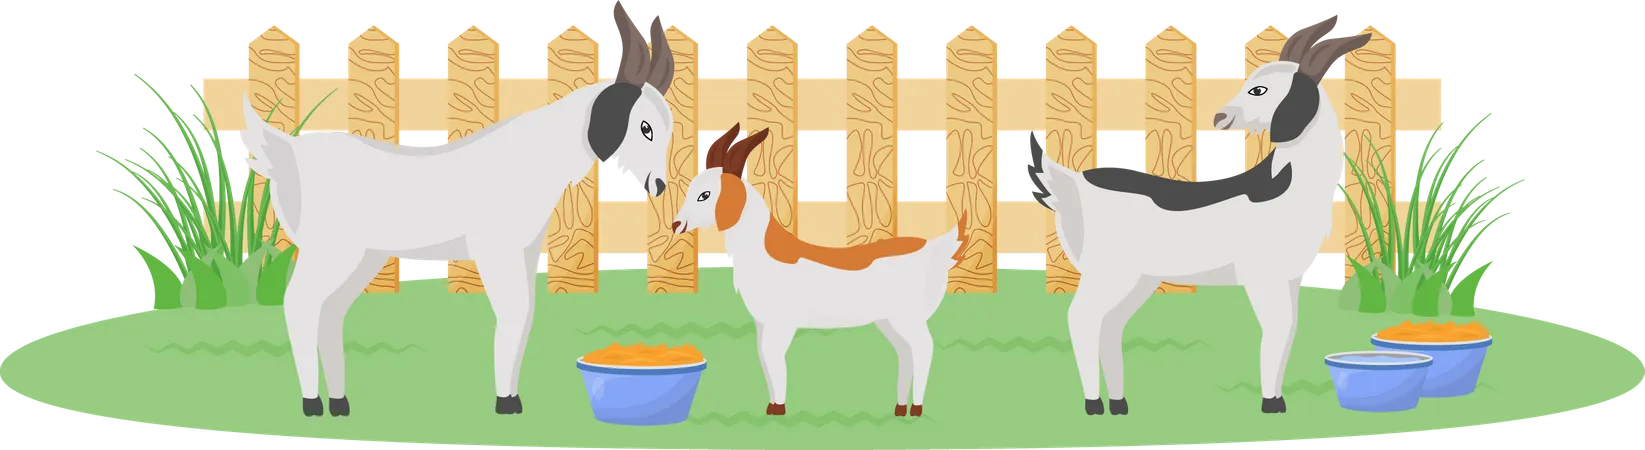 Goats in garden Illustration